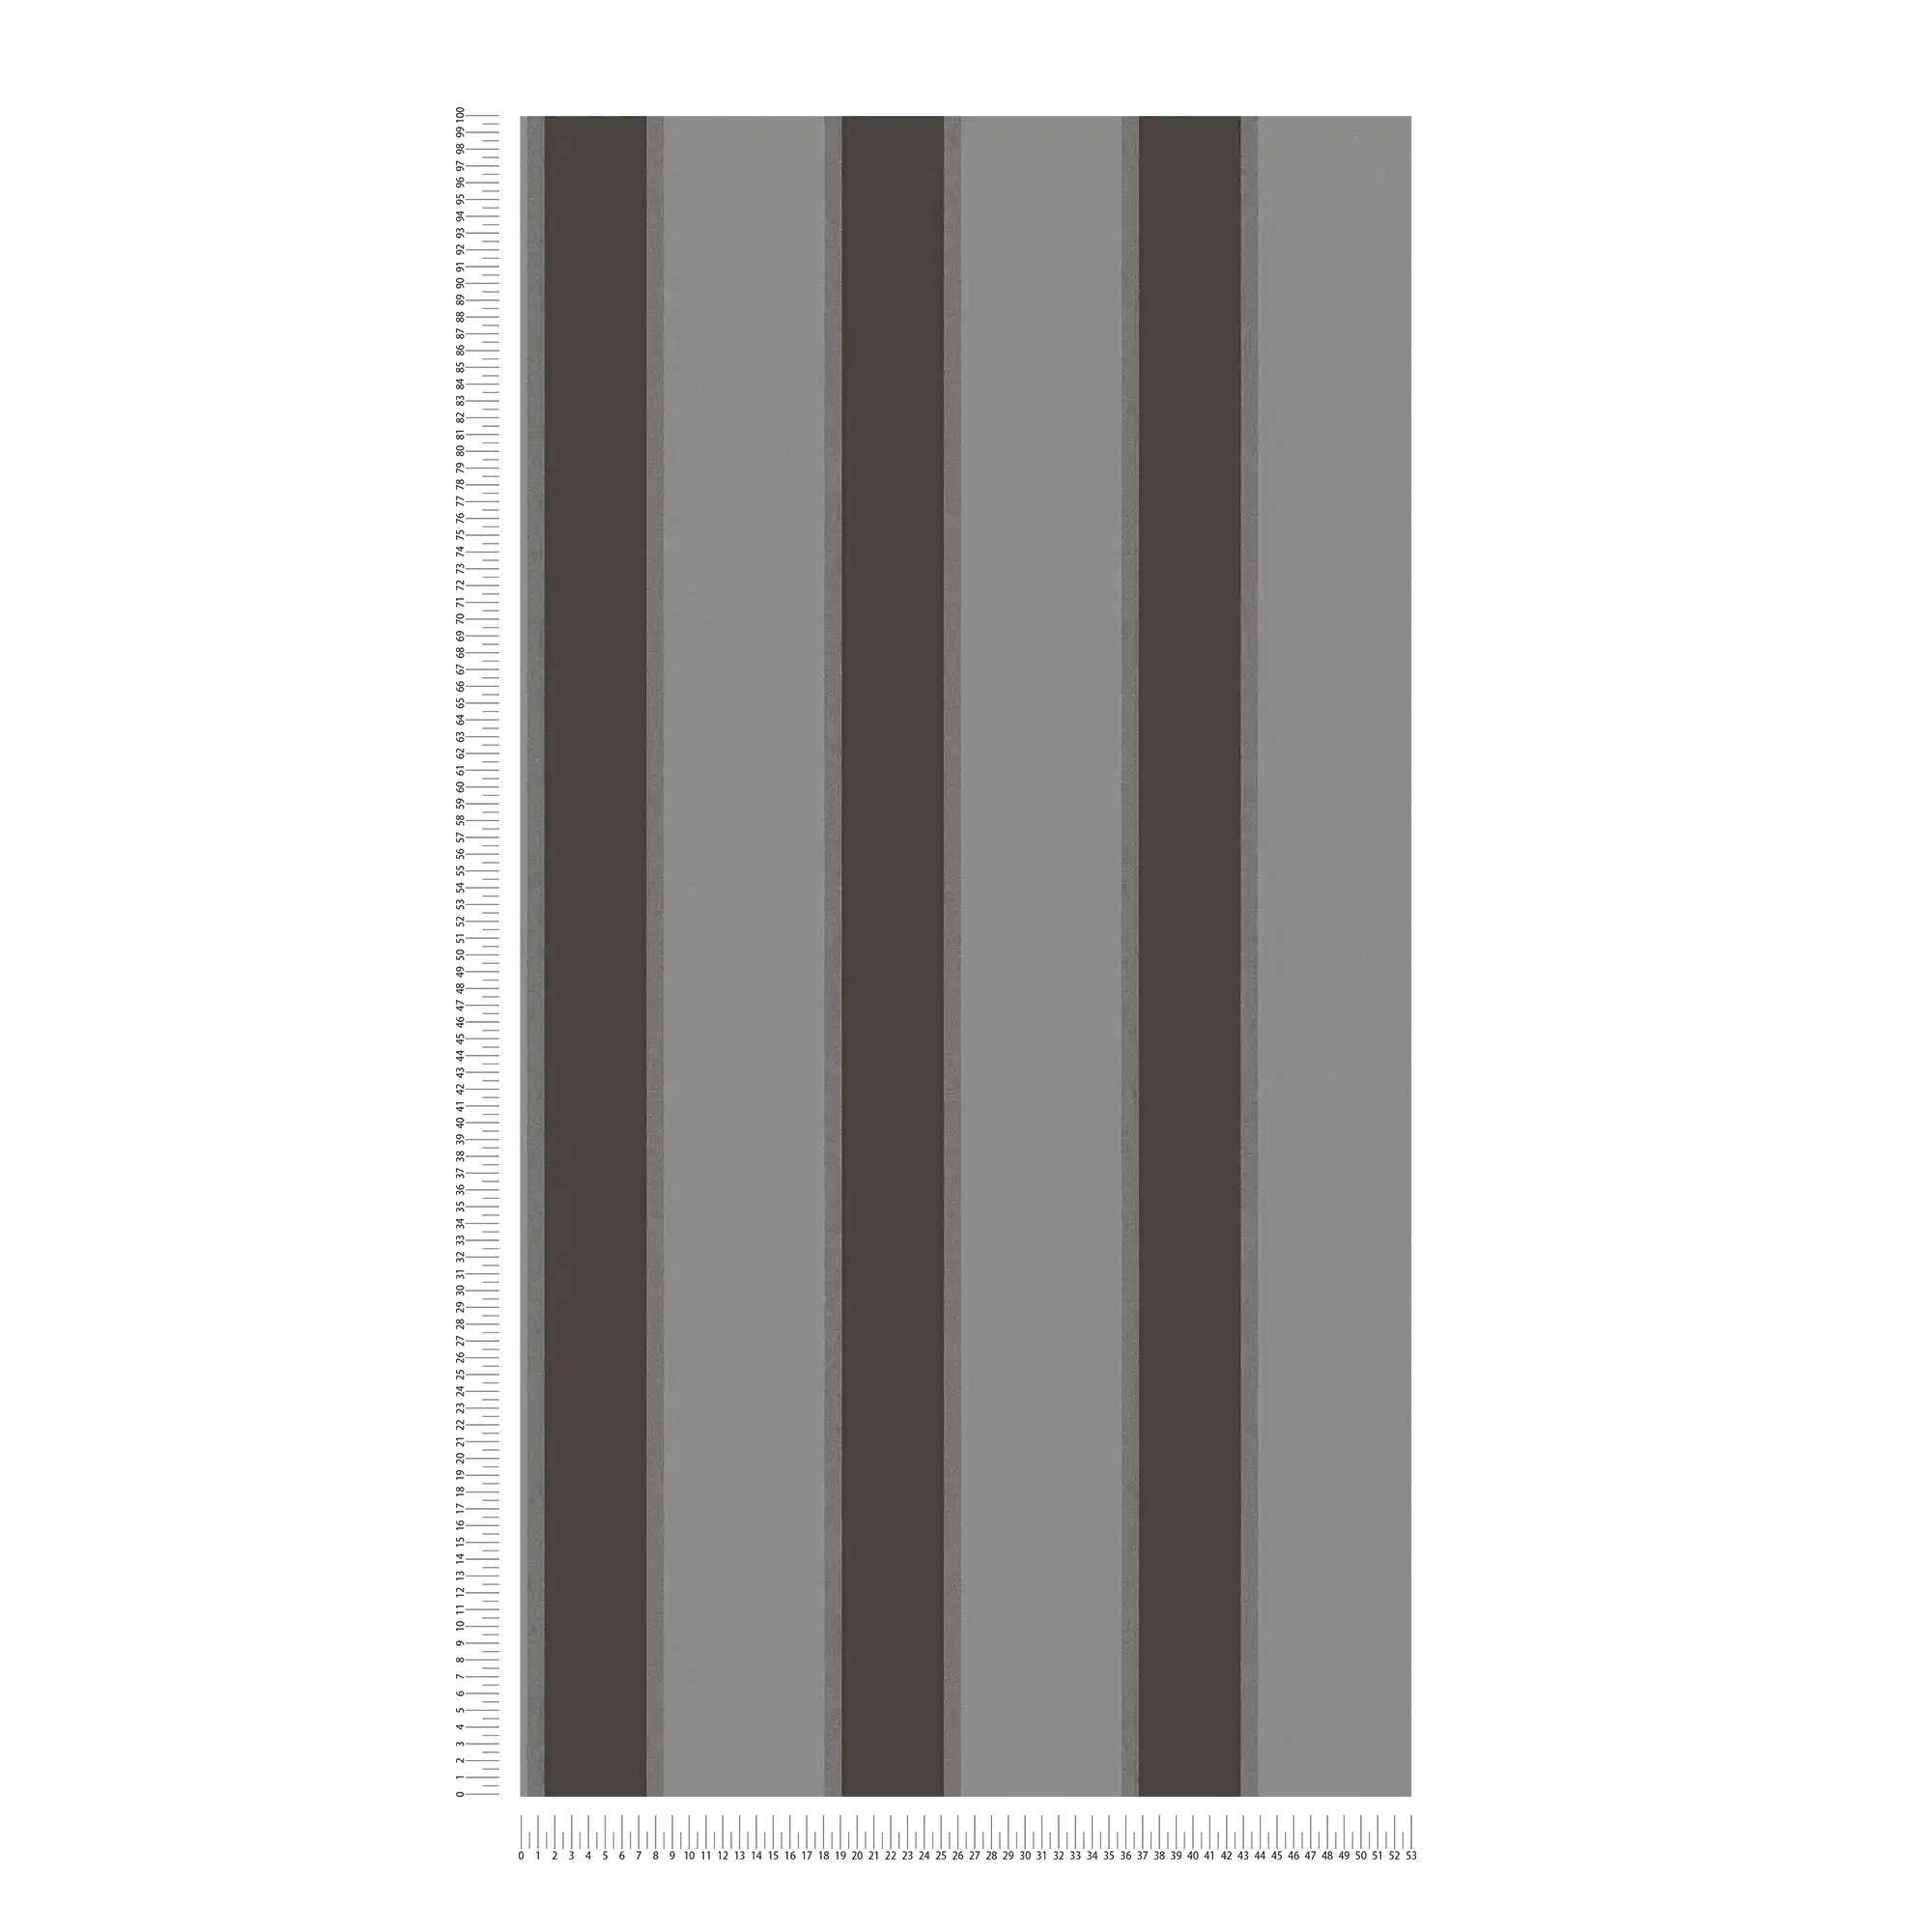             Carta da parati metallizzata con motivo a righe - grigio, nero
        